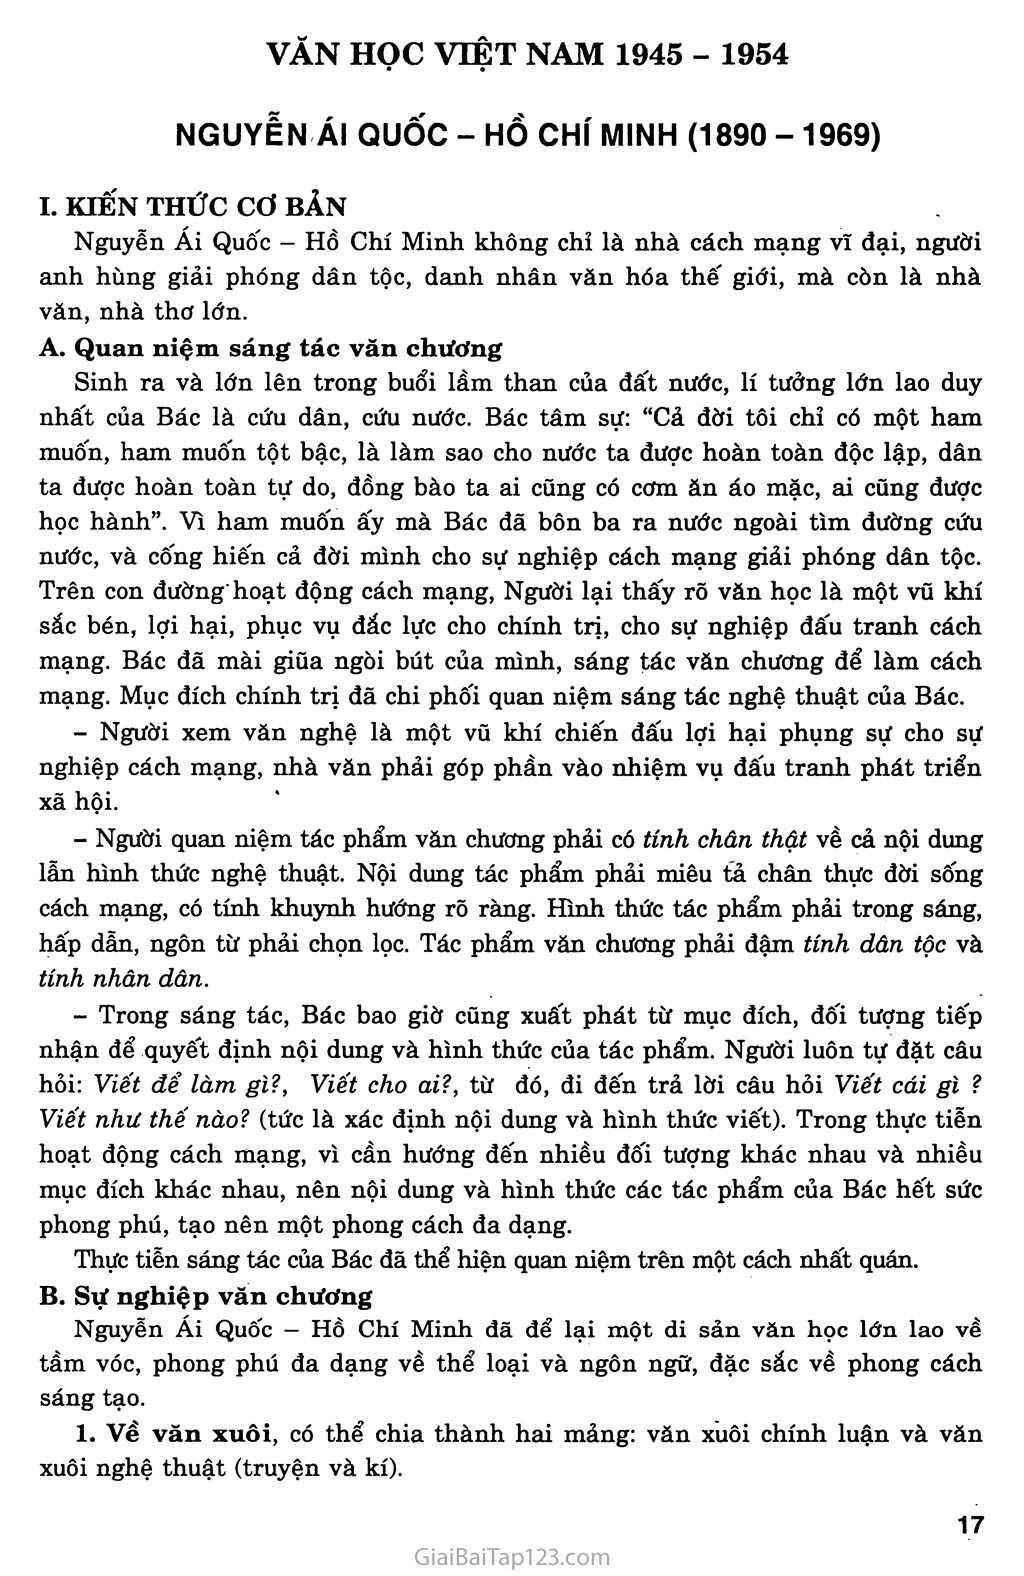 Nguyễn Ái Quốc - Hồ Chí Minh (1890 - 1969) trang 1